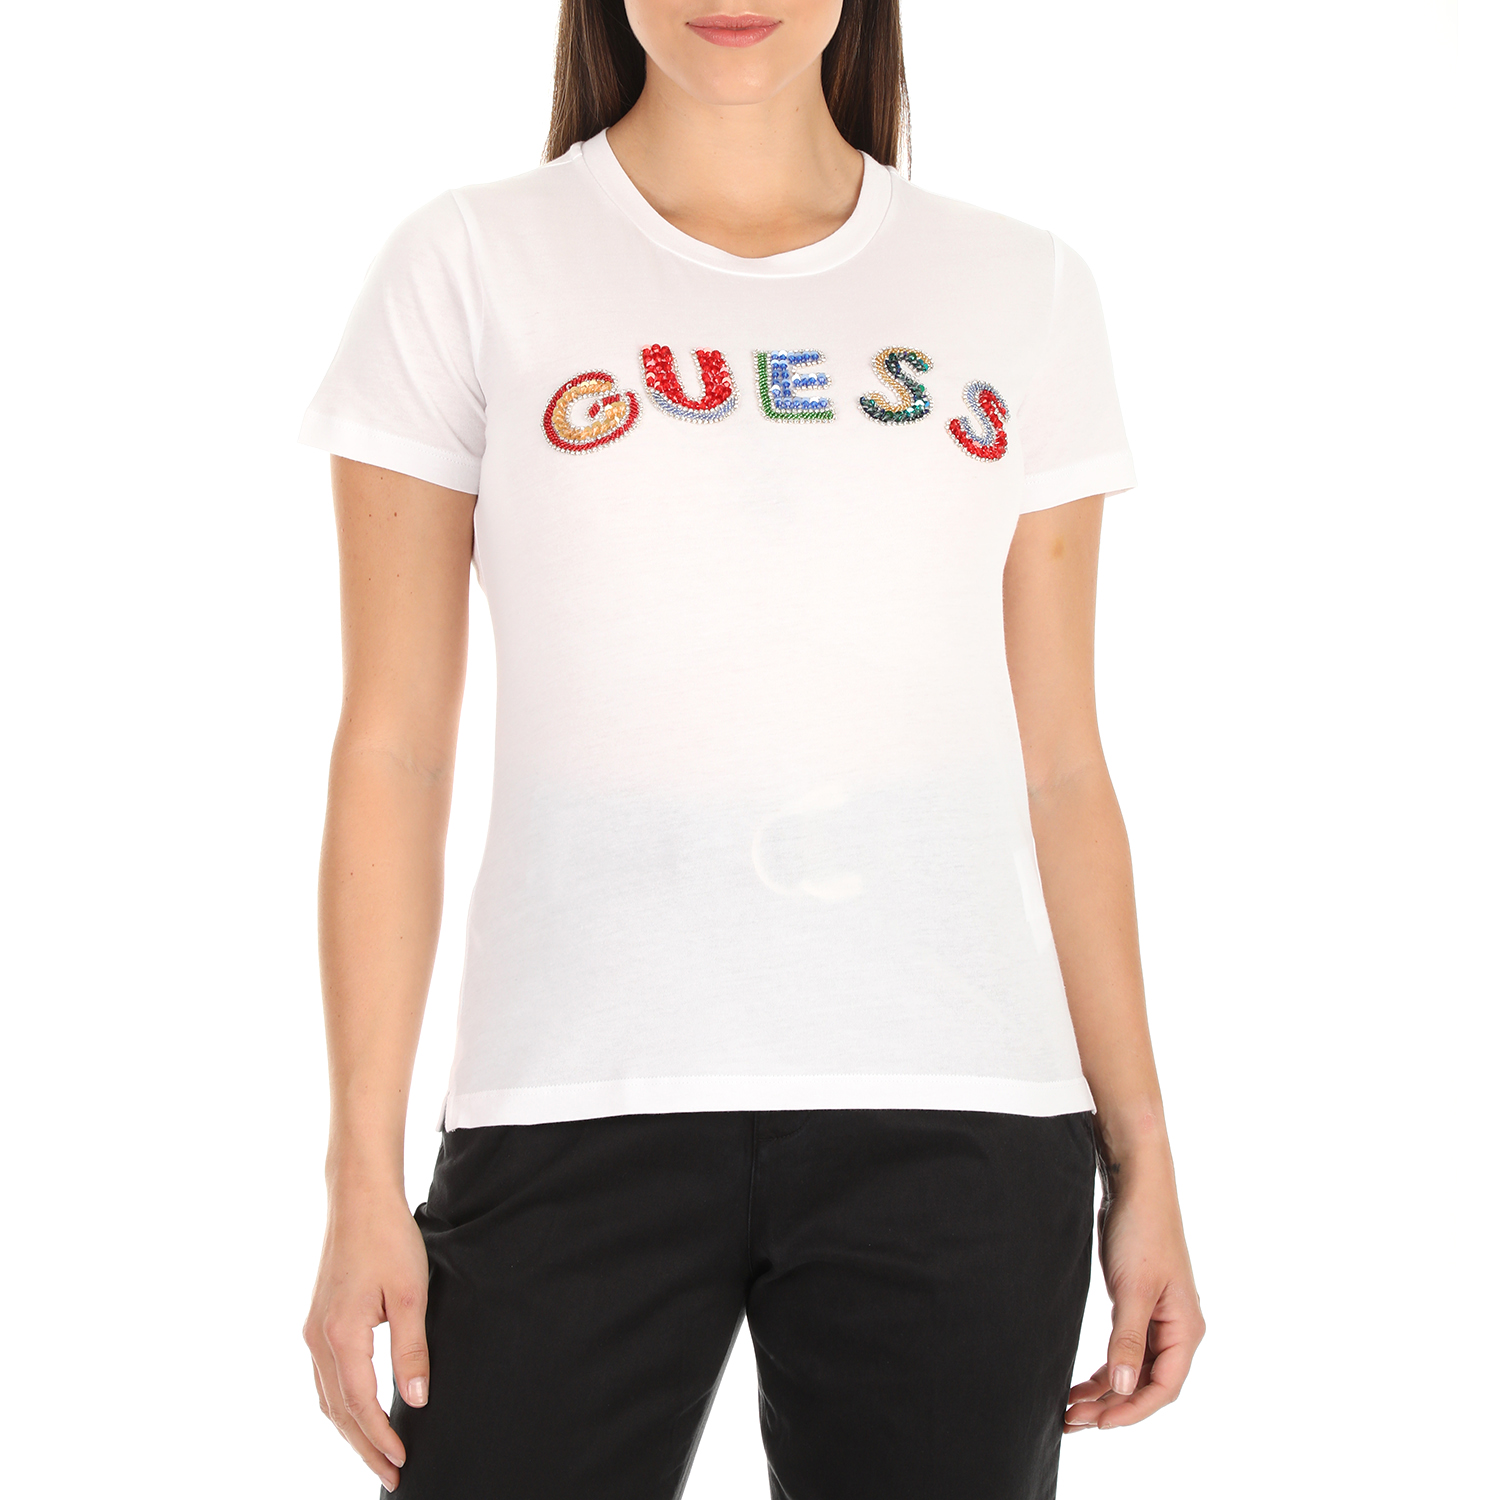 Γυναικεία/Ρούχα/Μπλούζες/Κοντομάνικες GUESS - Γυναικείο t-shirt με στάμπα GUESS RAINBOW λευκό